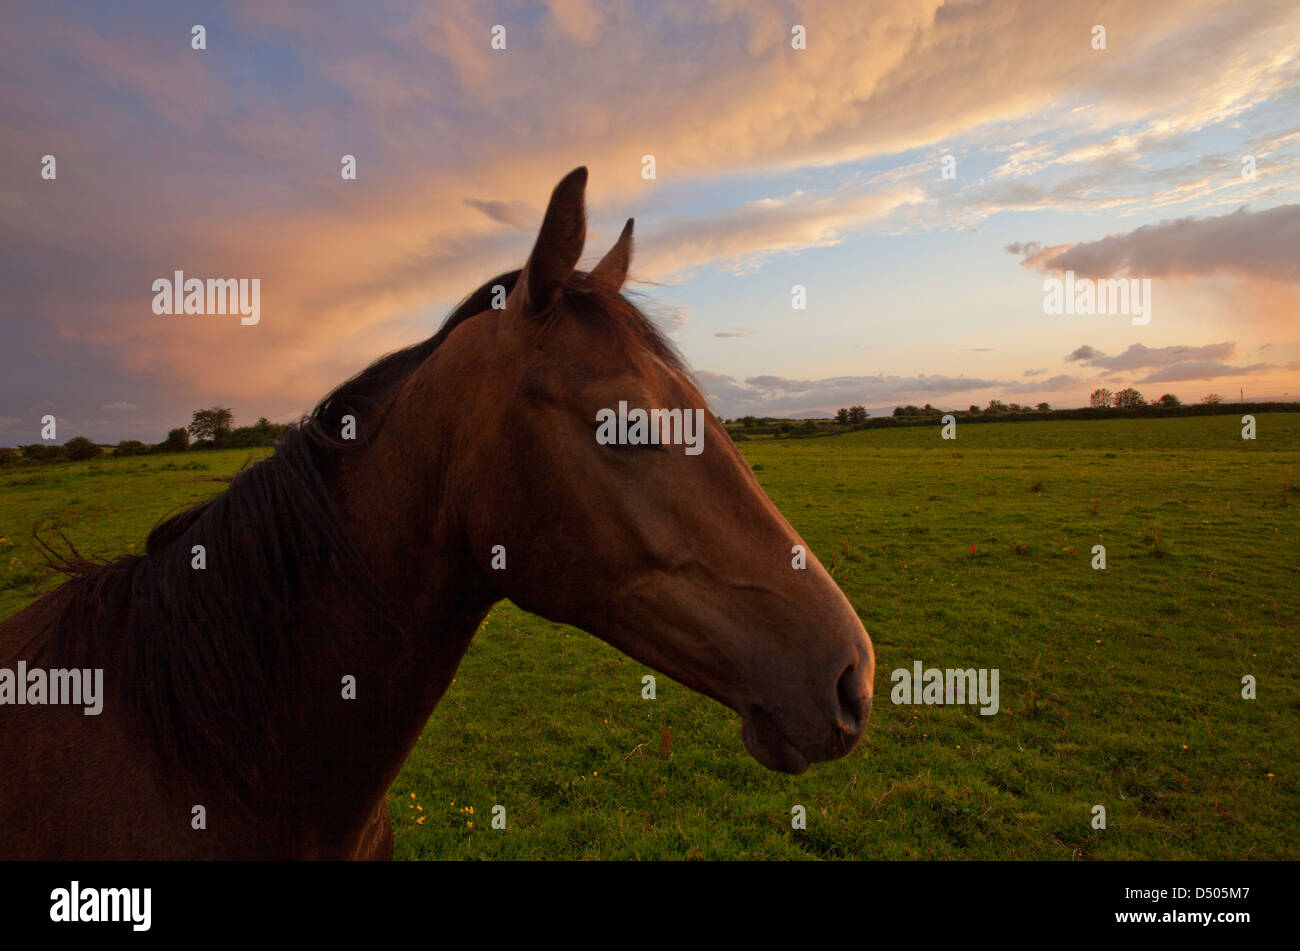 Horse at dusk, County Sligo, Ireland. Stock Photo